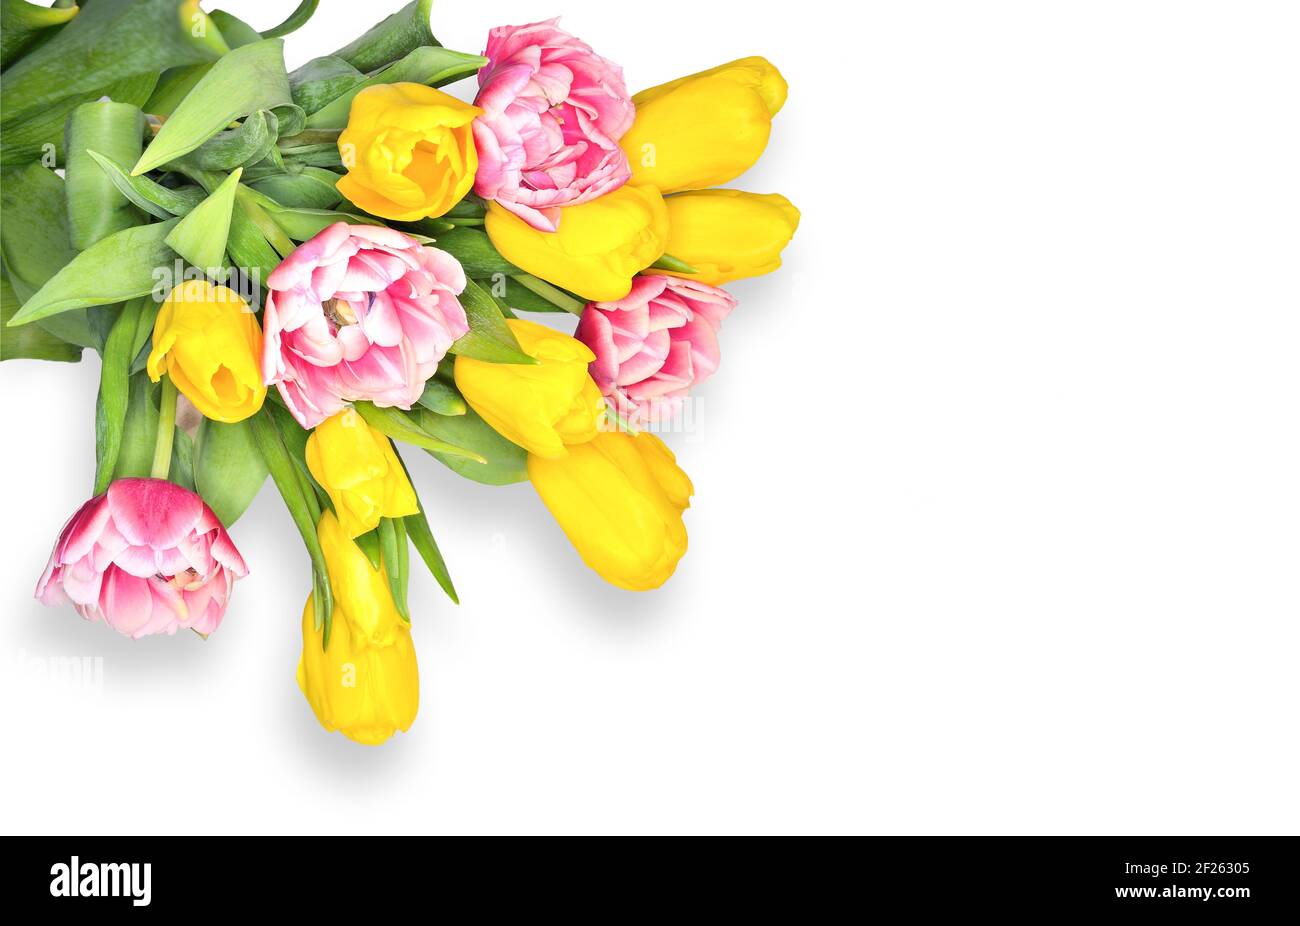 Elegantes Bouquet von frühlingsgelben und rosa-weißen Tulpenblüten auf weißem Hintergrund mit leerem Raum für Text. Festliches Blumenmuster für Grußkarte, Stockfoto